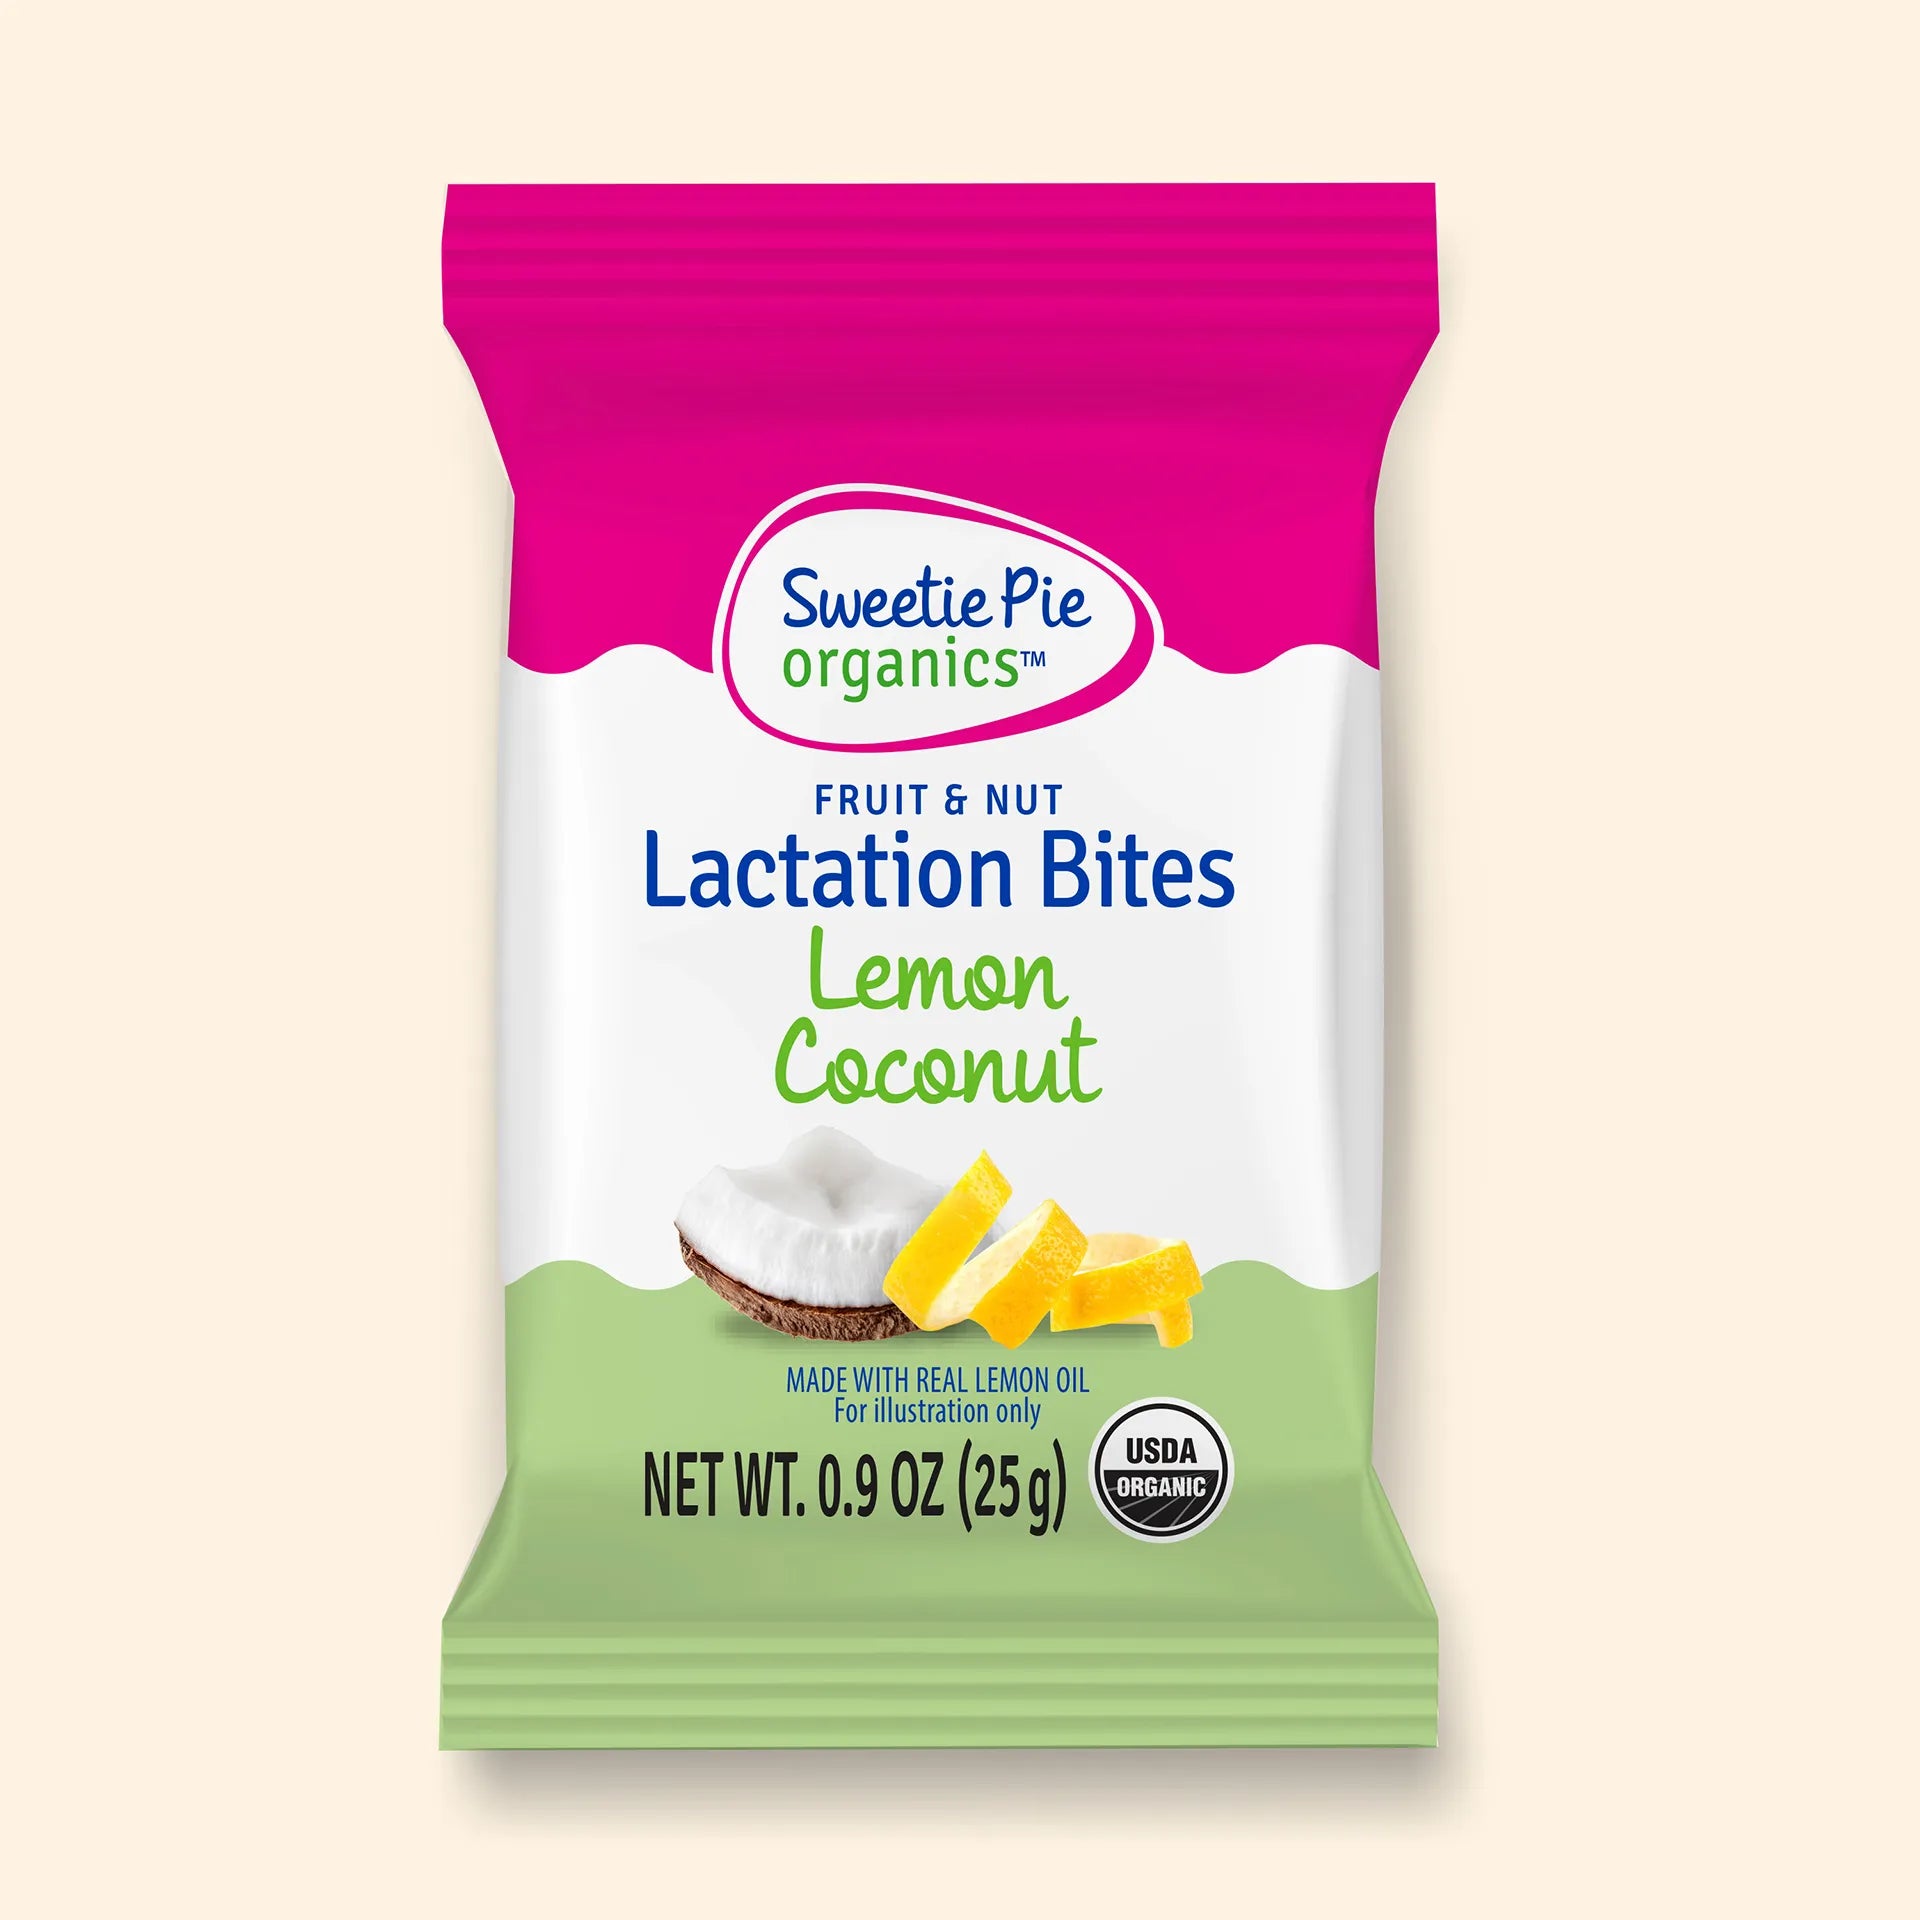 Sweetie Pie Organics™ Lactation Bites – Lemon Coconut